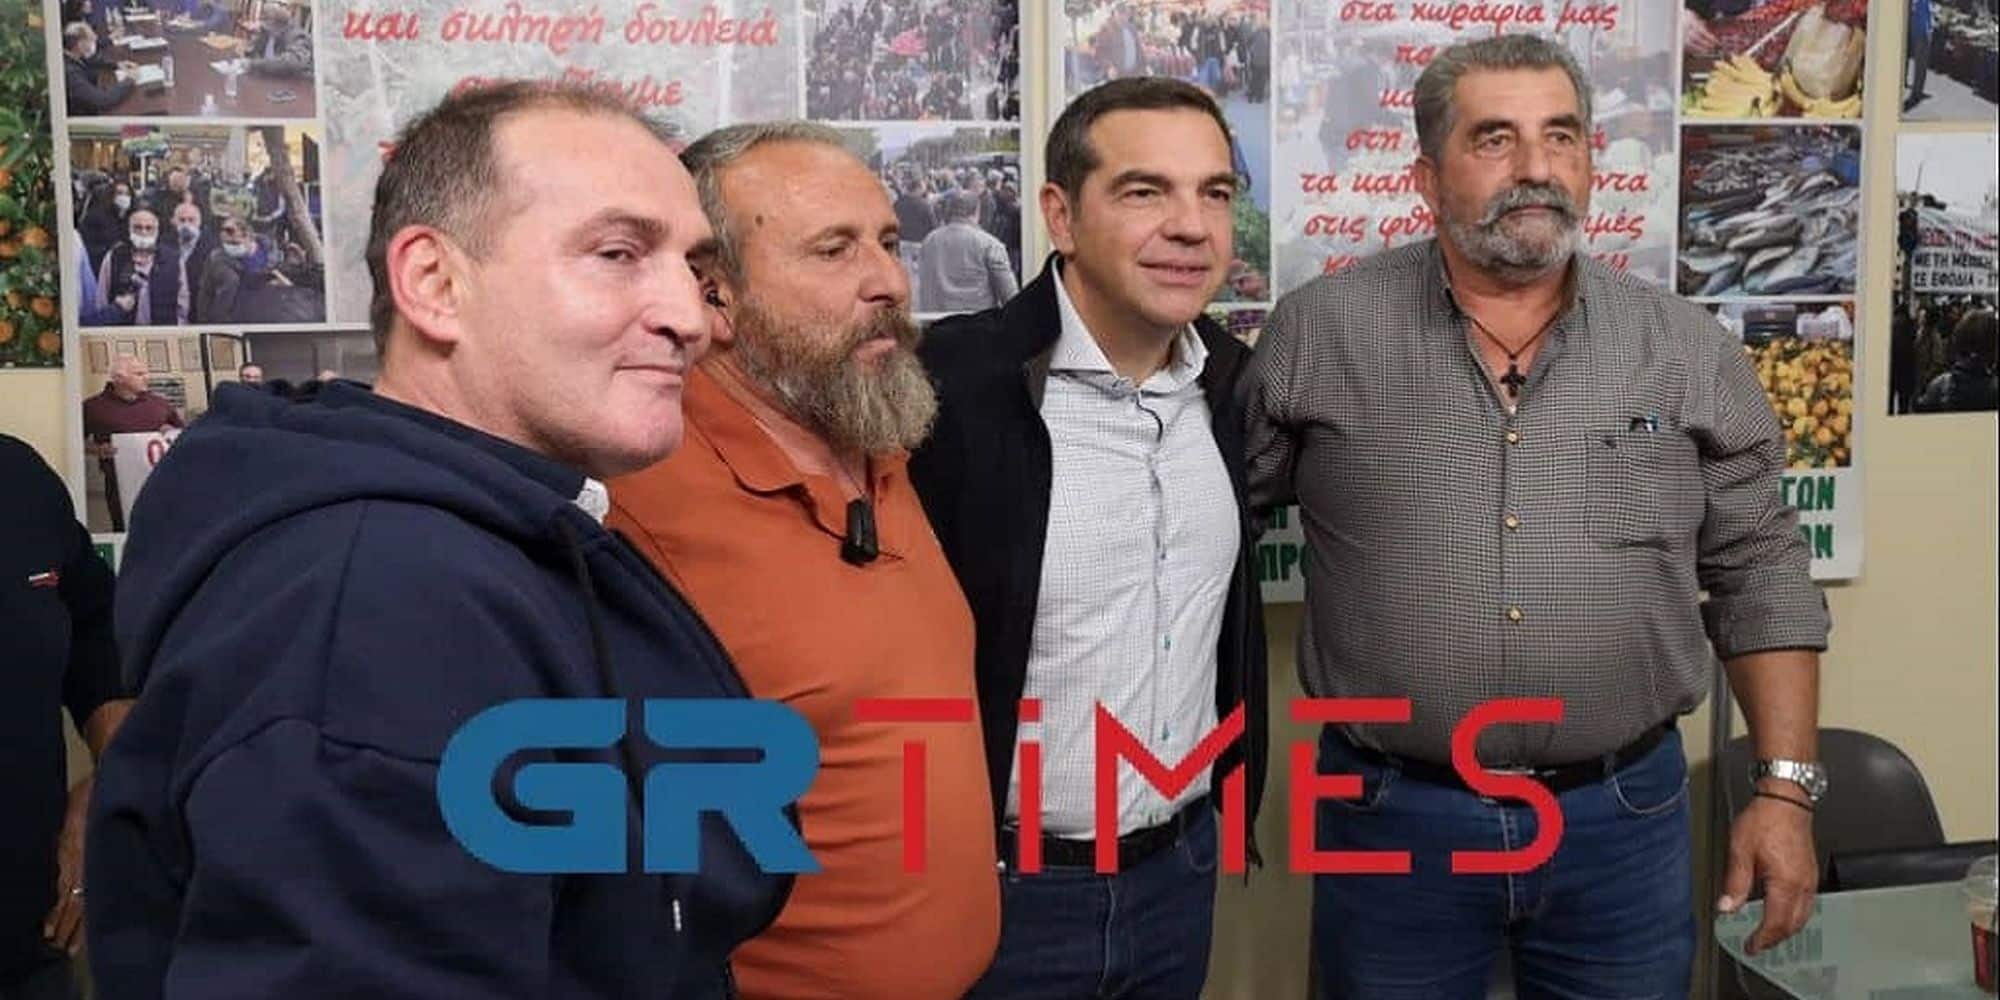 tsipras agrotica - Δώρο μια ποντιακή λύρα του ΠΑΟΚ έκαναν στον Τσίπρα (βίντεο)